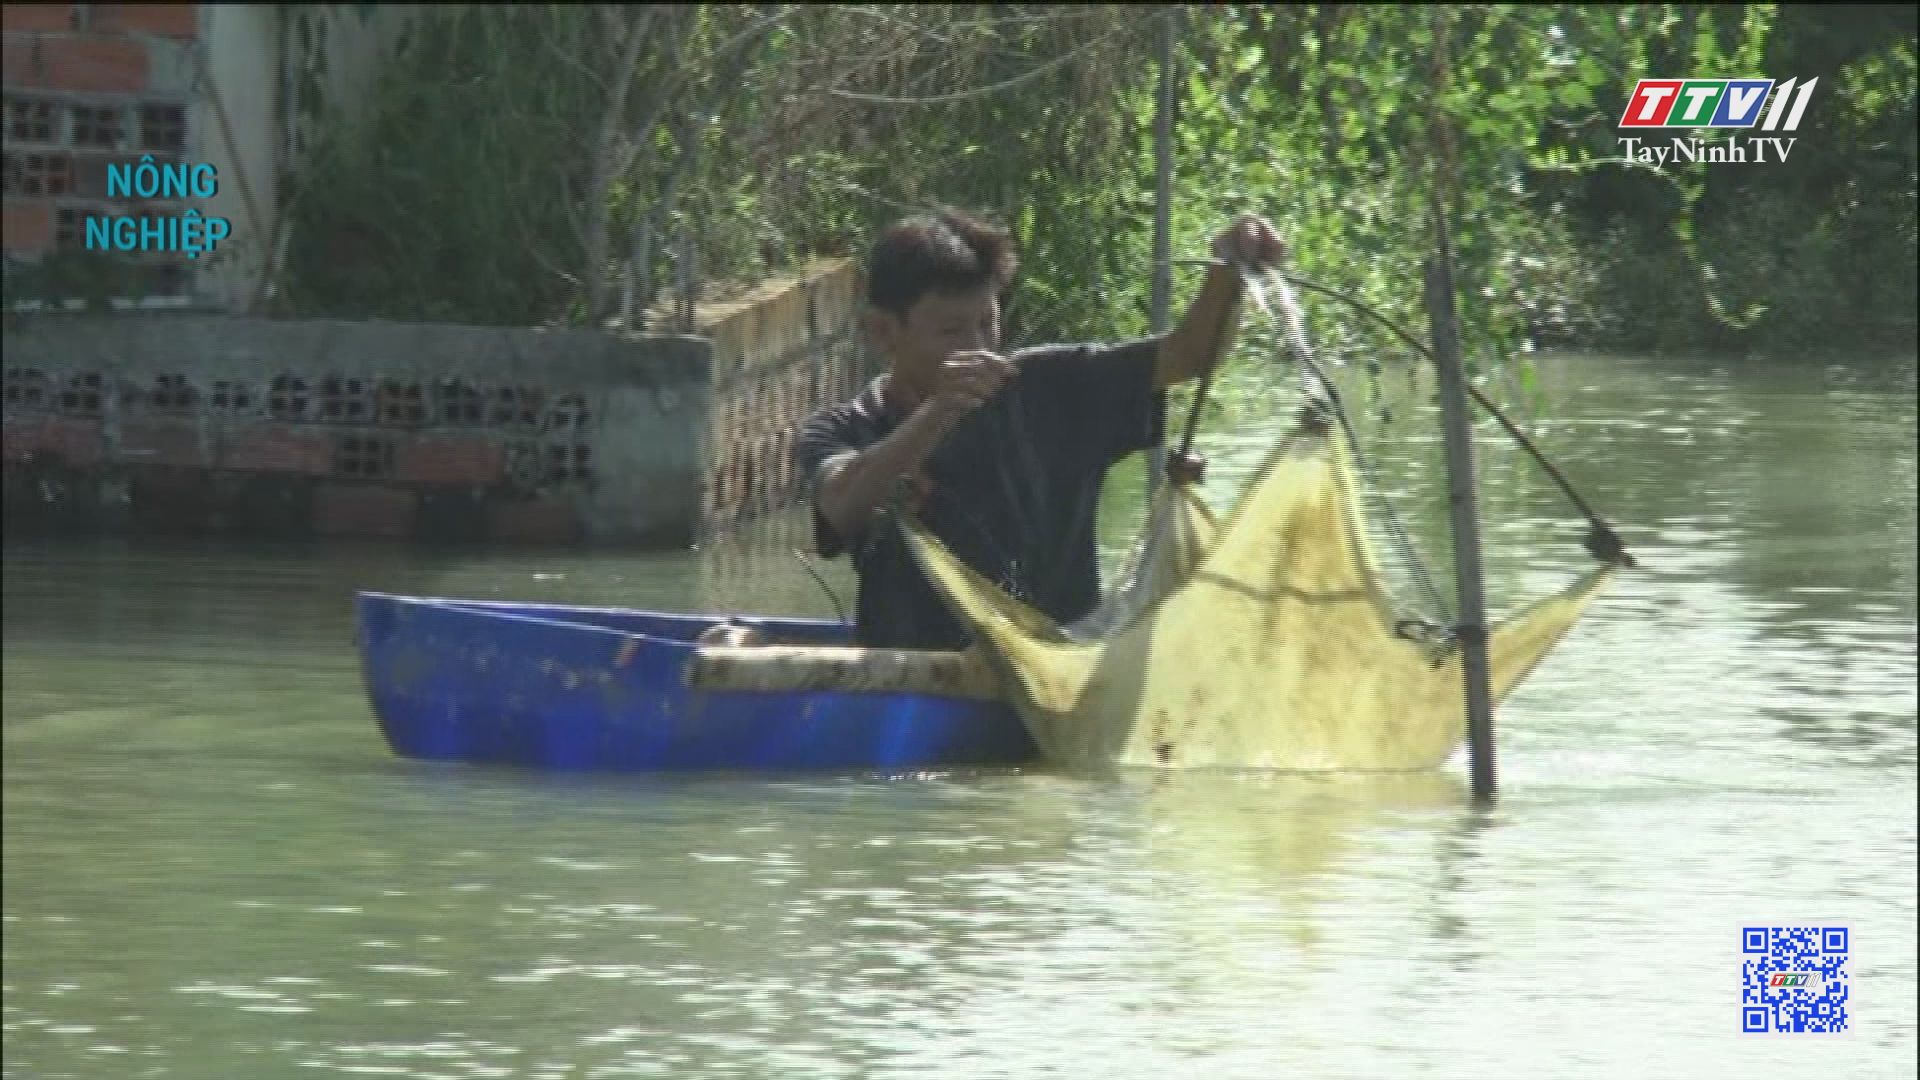 Nuôi tôm càng xanh trong ao nước ngọt | Nông nghiệp Tây Ninh | TayNinhTV